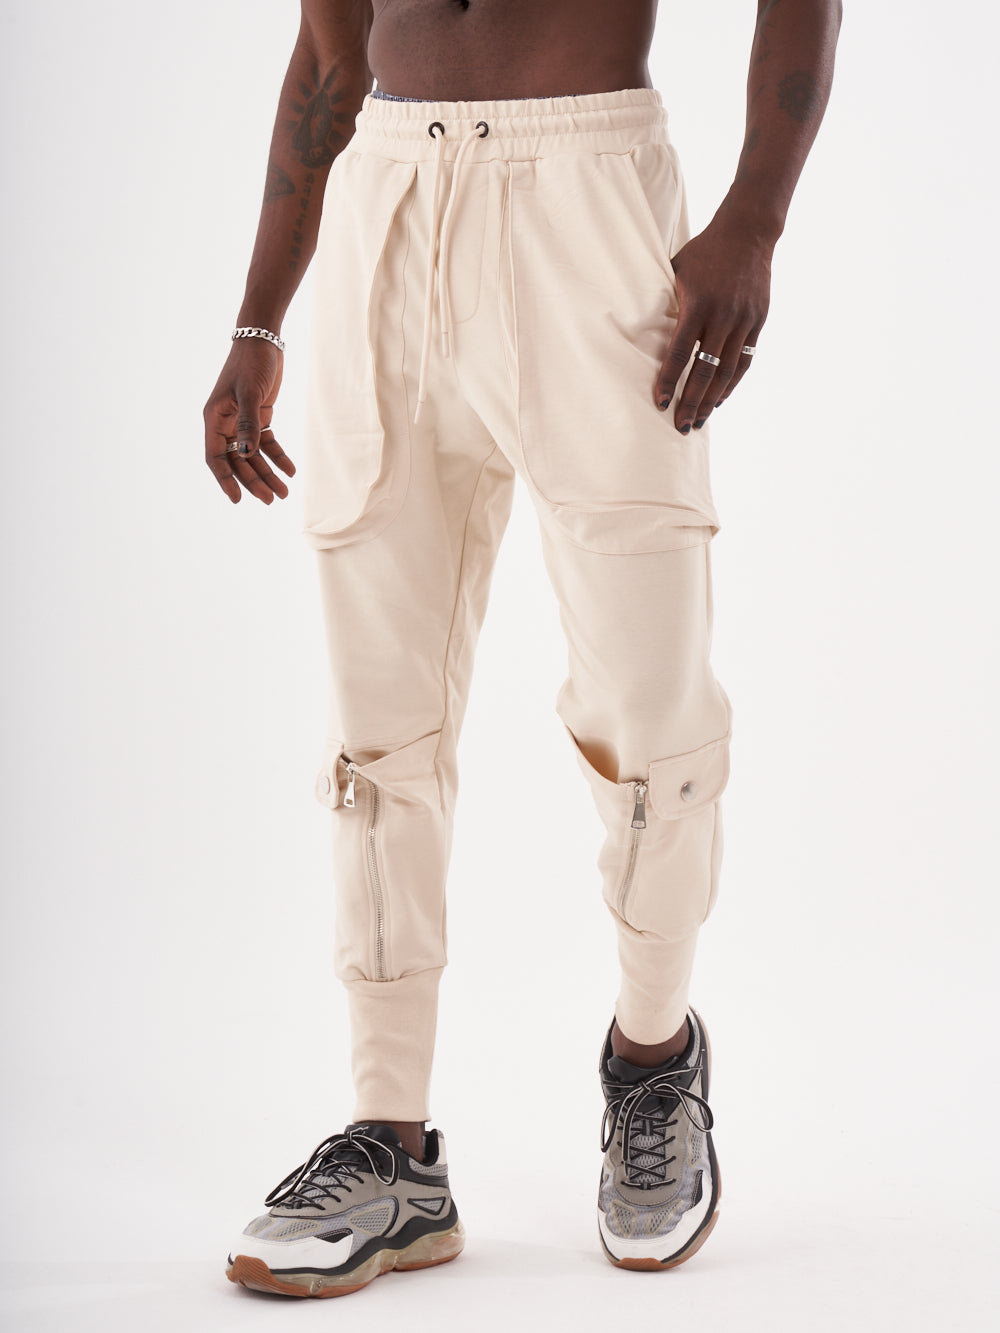 Streetwear Style Sweatpants Men for SERNES & - Joggers